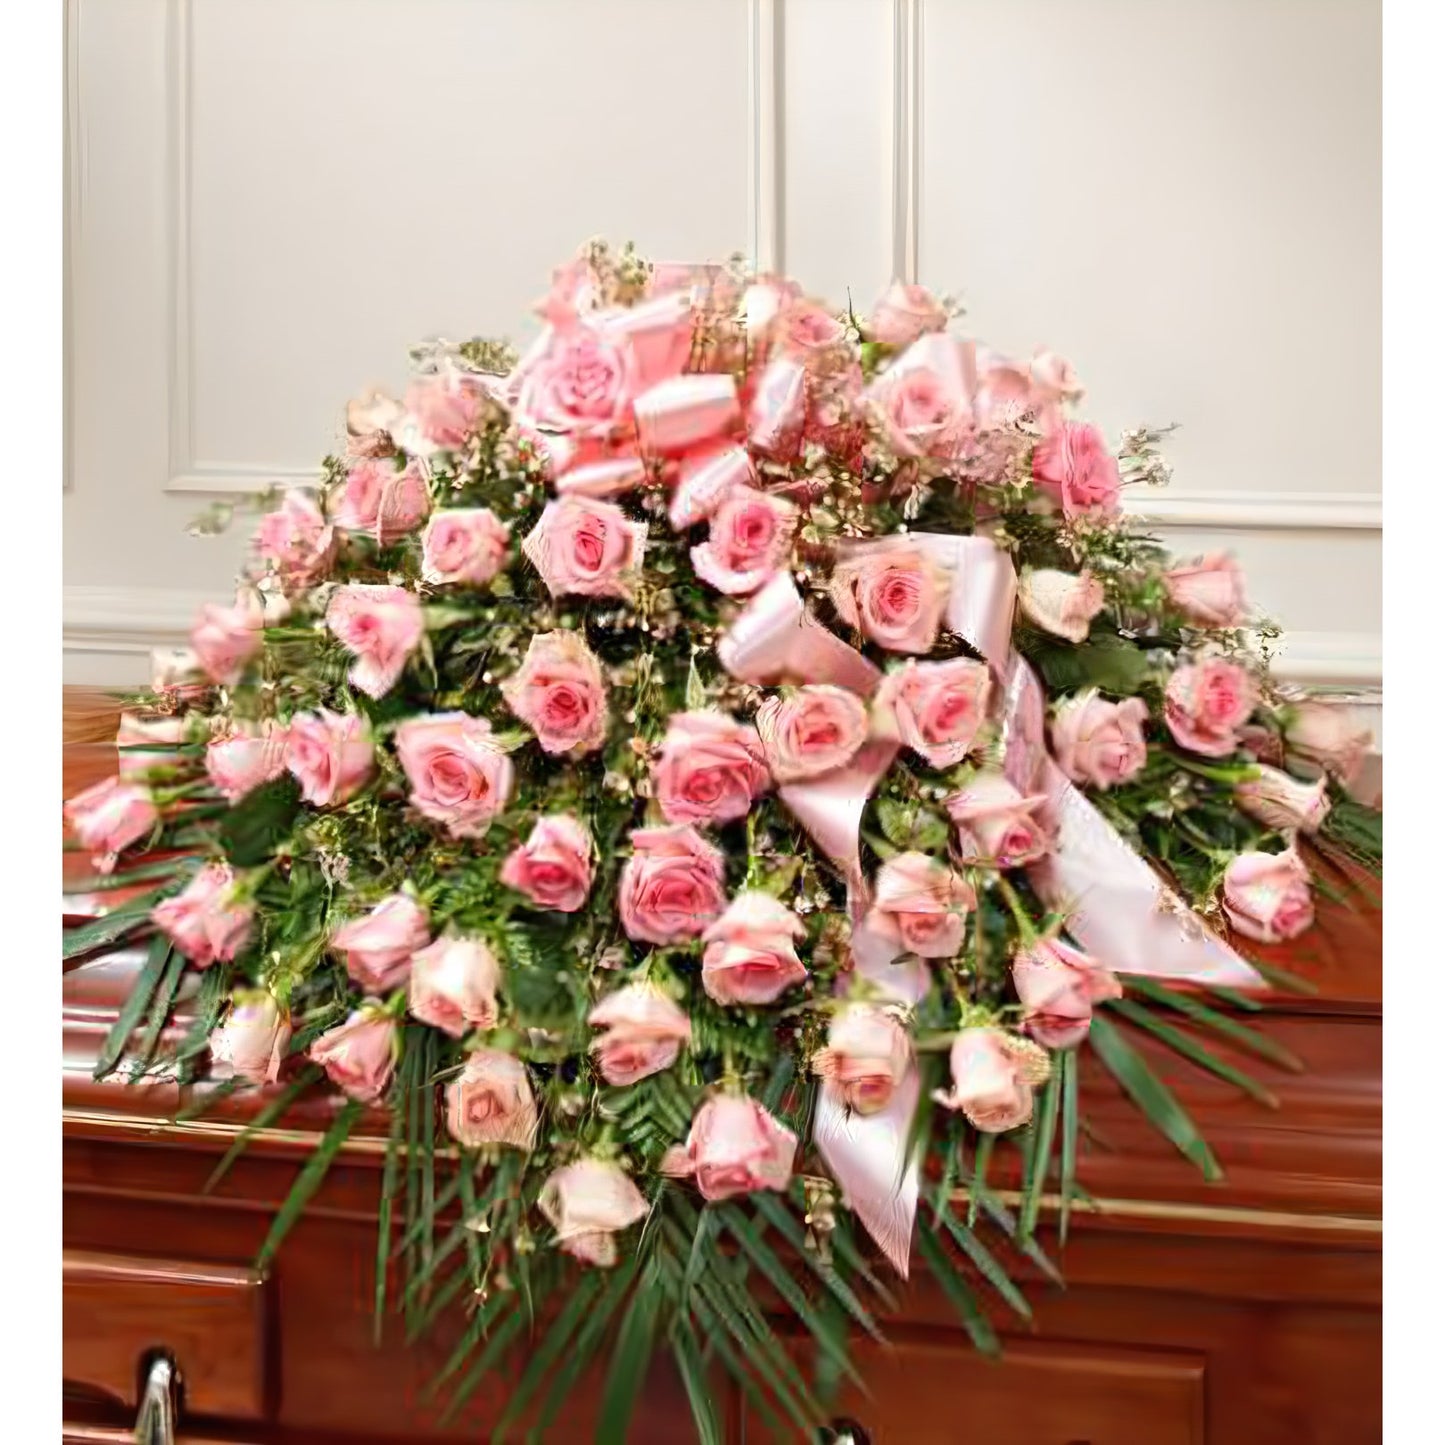 Cherished Memories Rose Half Casket Cover - Pink - Floral_Arrangement - Flower Delivery NYC